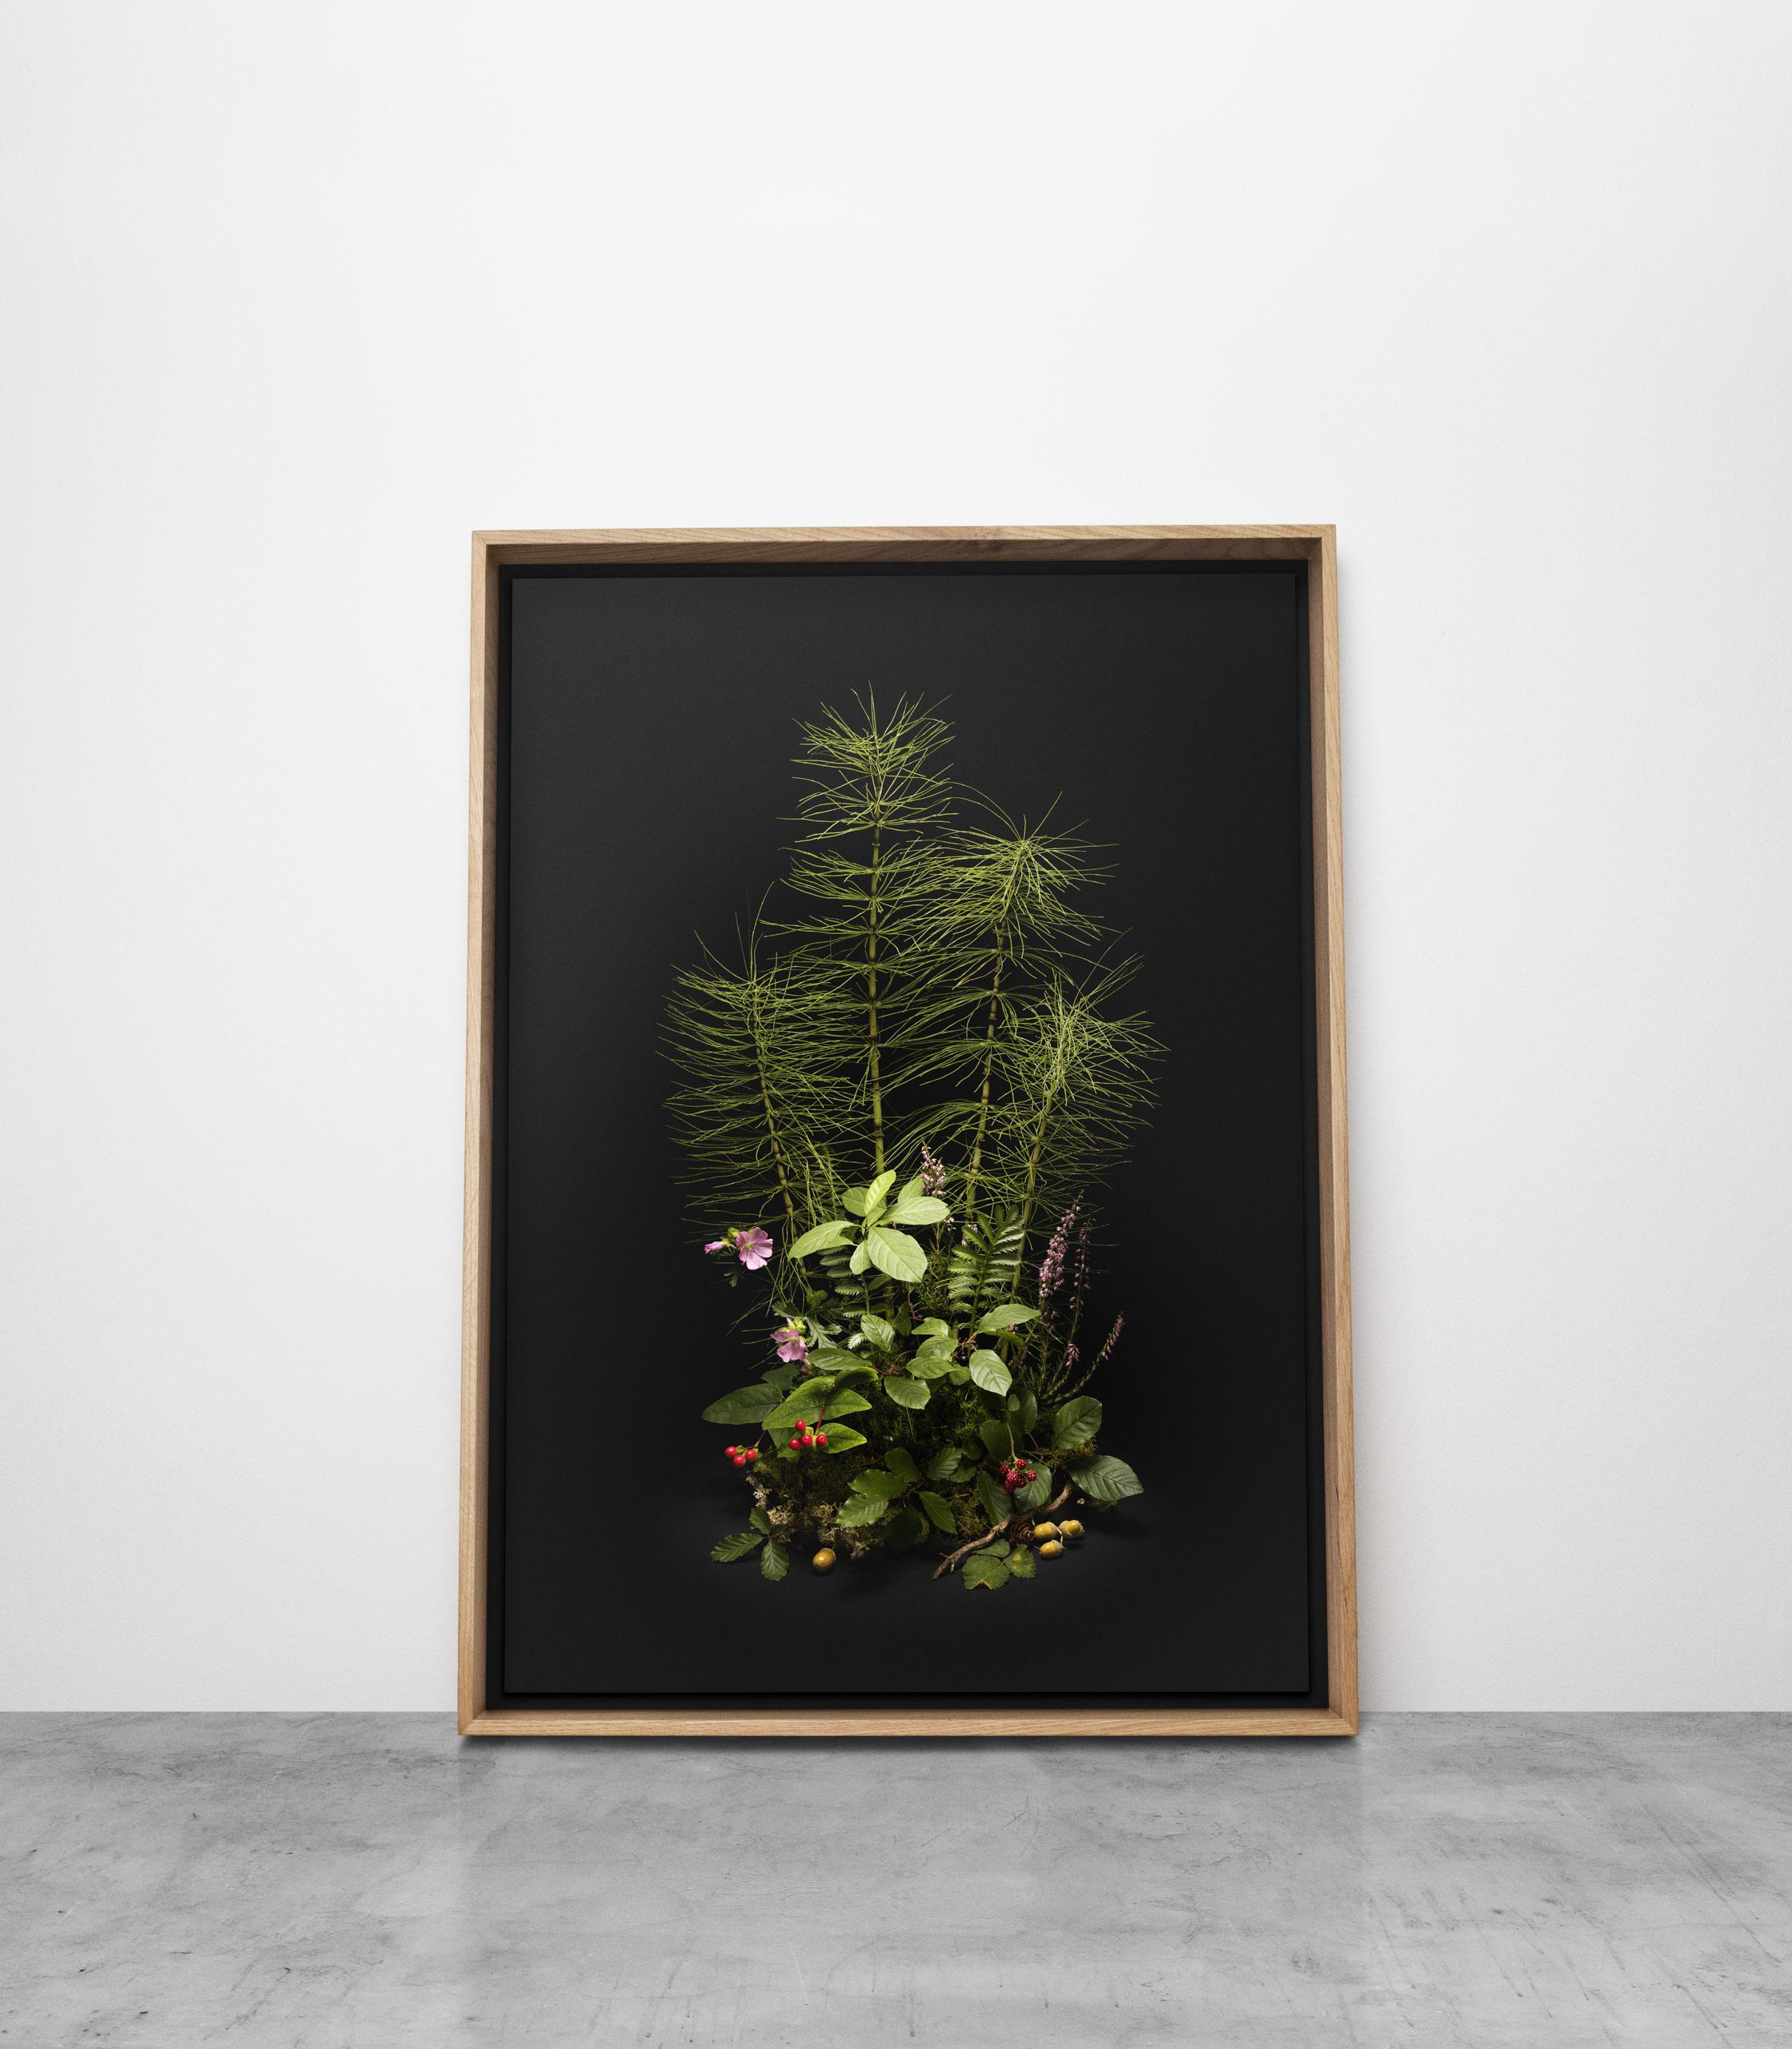 Dunkle Blume #, Schwalbenschwanz, Ein Blumenarrangement aus wilden Pflanzen und Blumen (Zeitgenössisch), Print, von Jasper Goodall